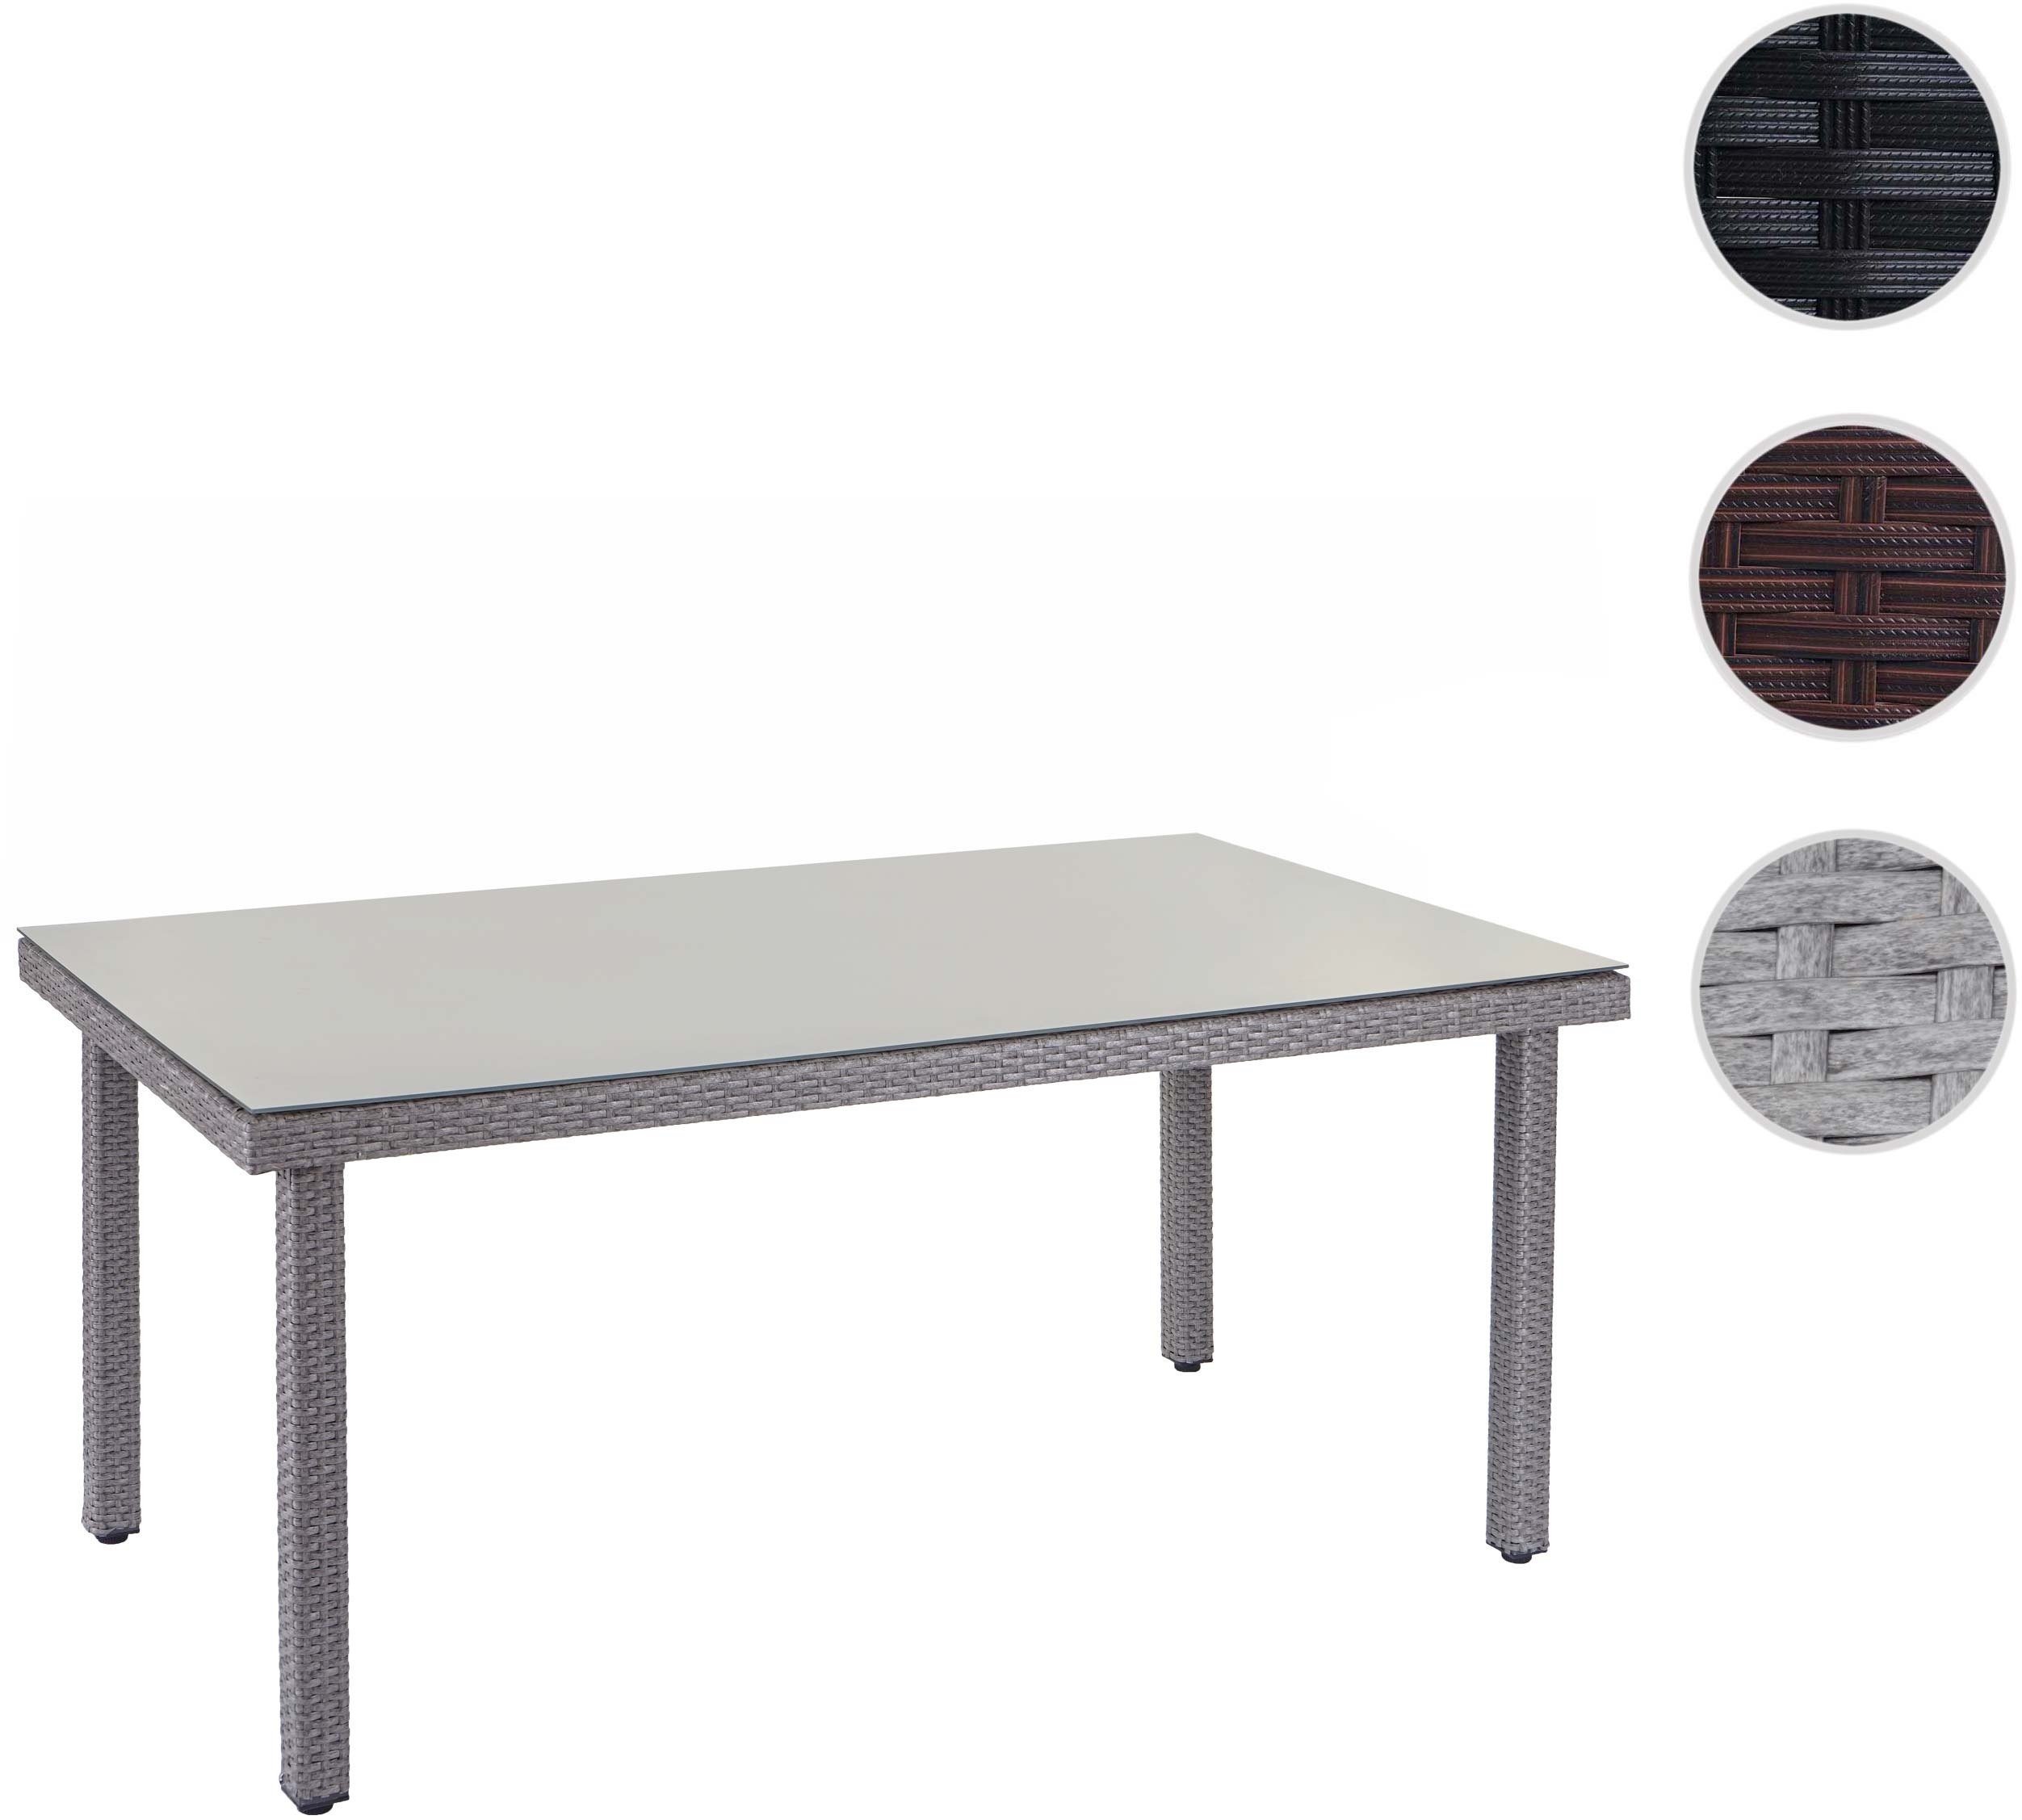 Poly-Rattan Gartentisch Cava, Esstisch Tisch mit Glasplatte, 160x90x74cm ~ grau